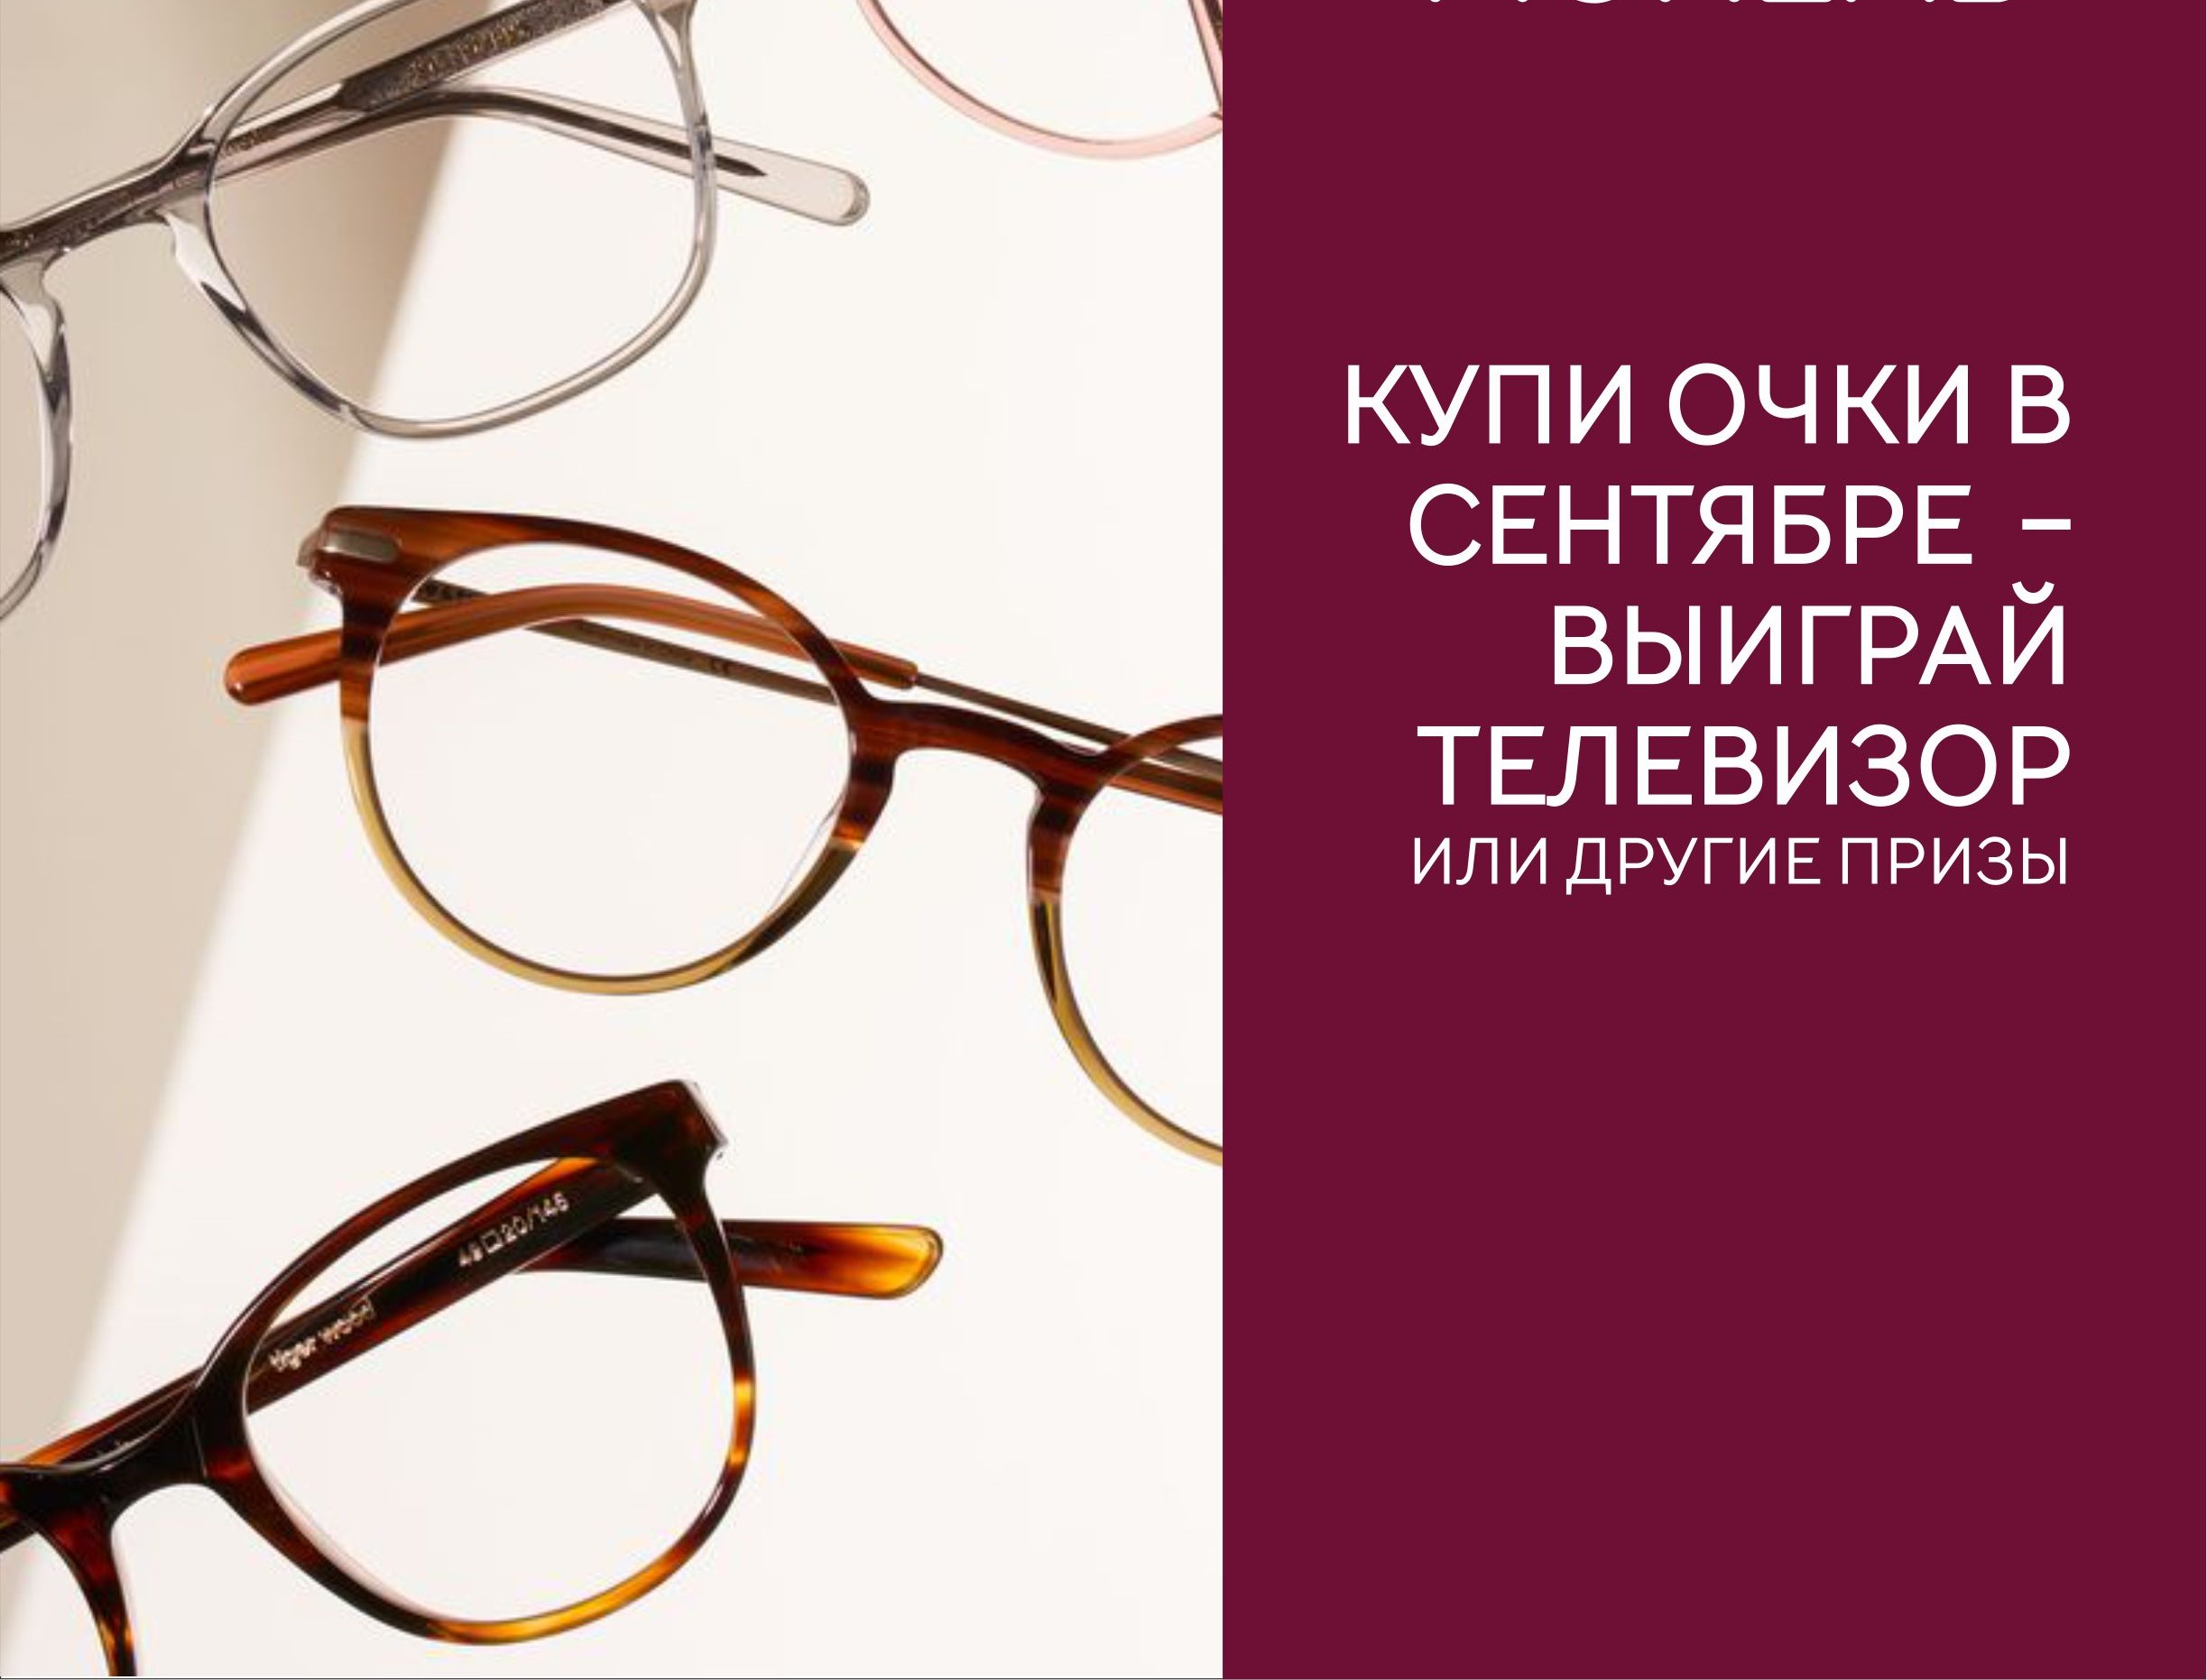 Купи очки в сентябре, участвуй в РОЗЫГРЫШЕ ТЕЛЕВИЗОРА и др. призов